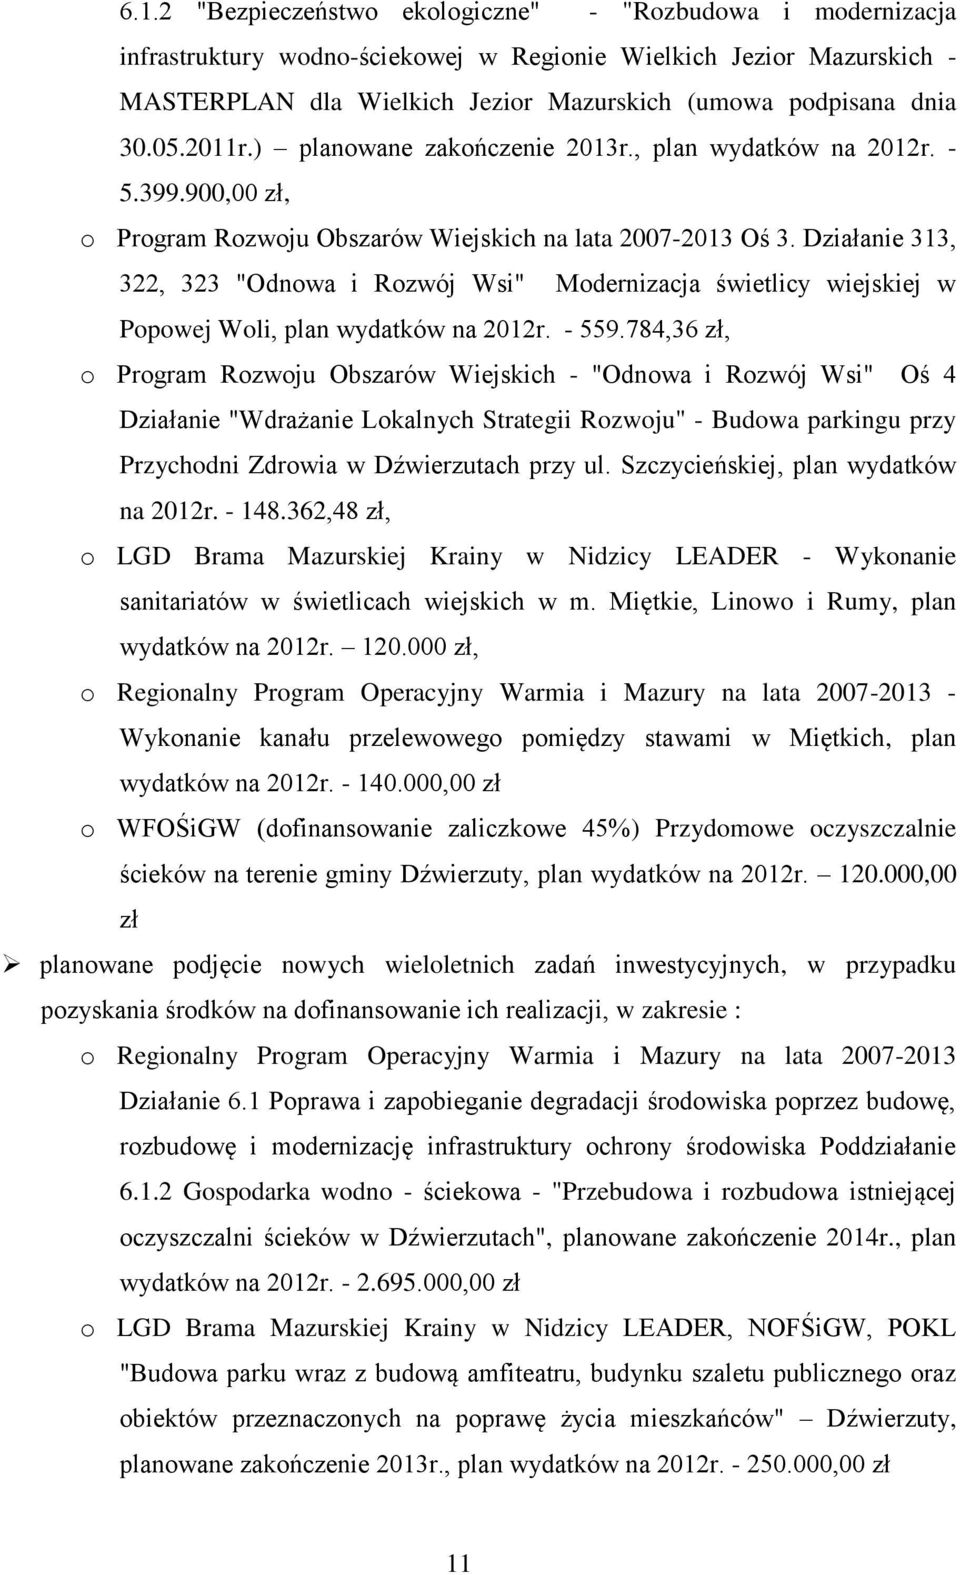 Działanie 313, 322, 323 "Odnowa i Rozwój Wsi" Modernizacja świetlicy wiejskiej w Popowej Woli, plan wydatków na 2012r. - 559.